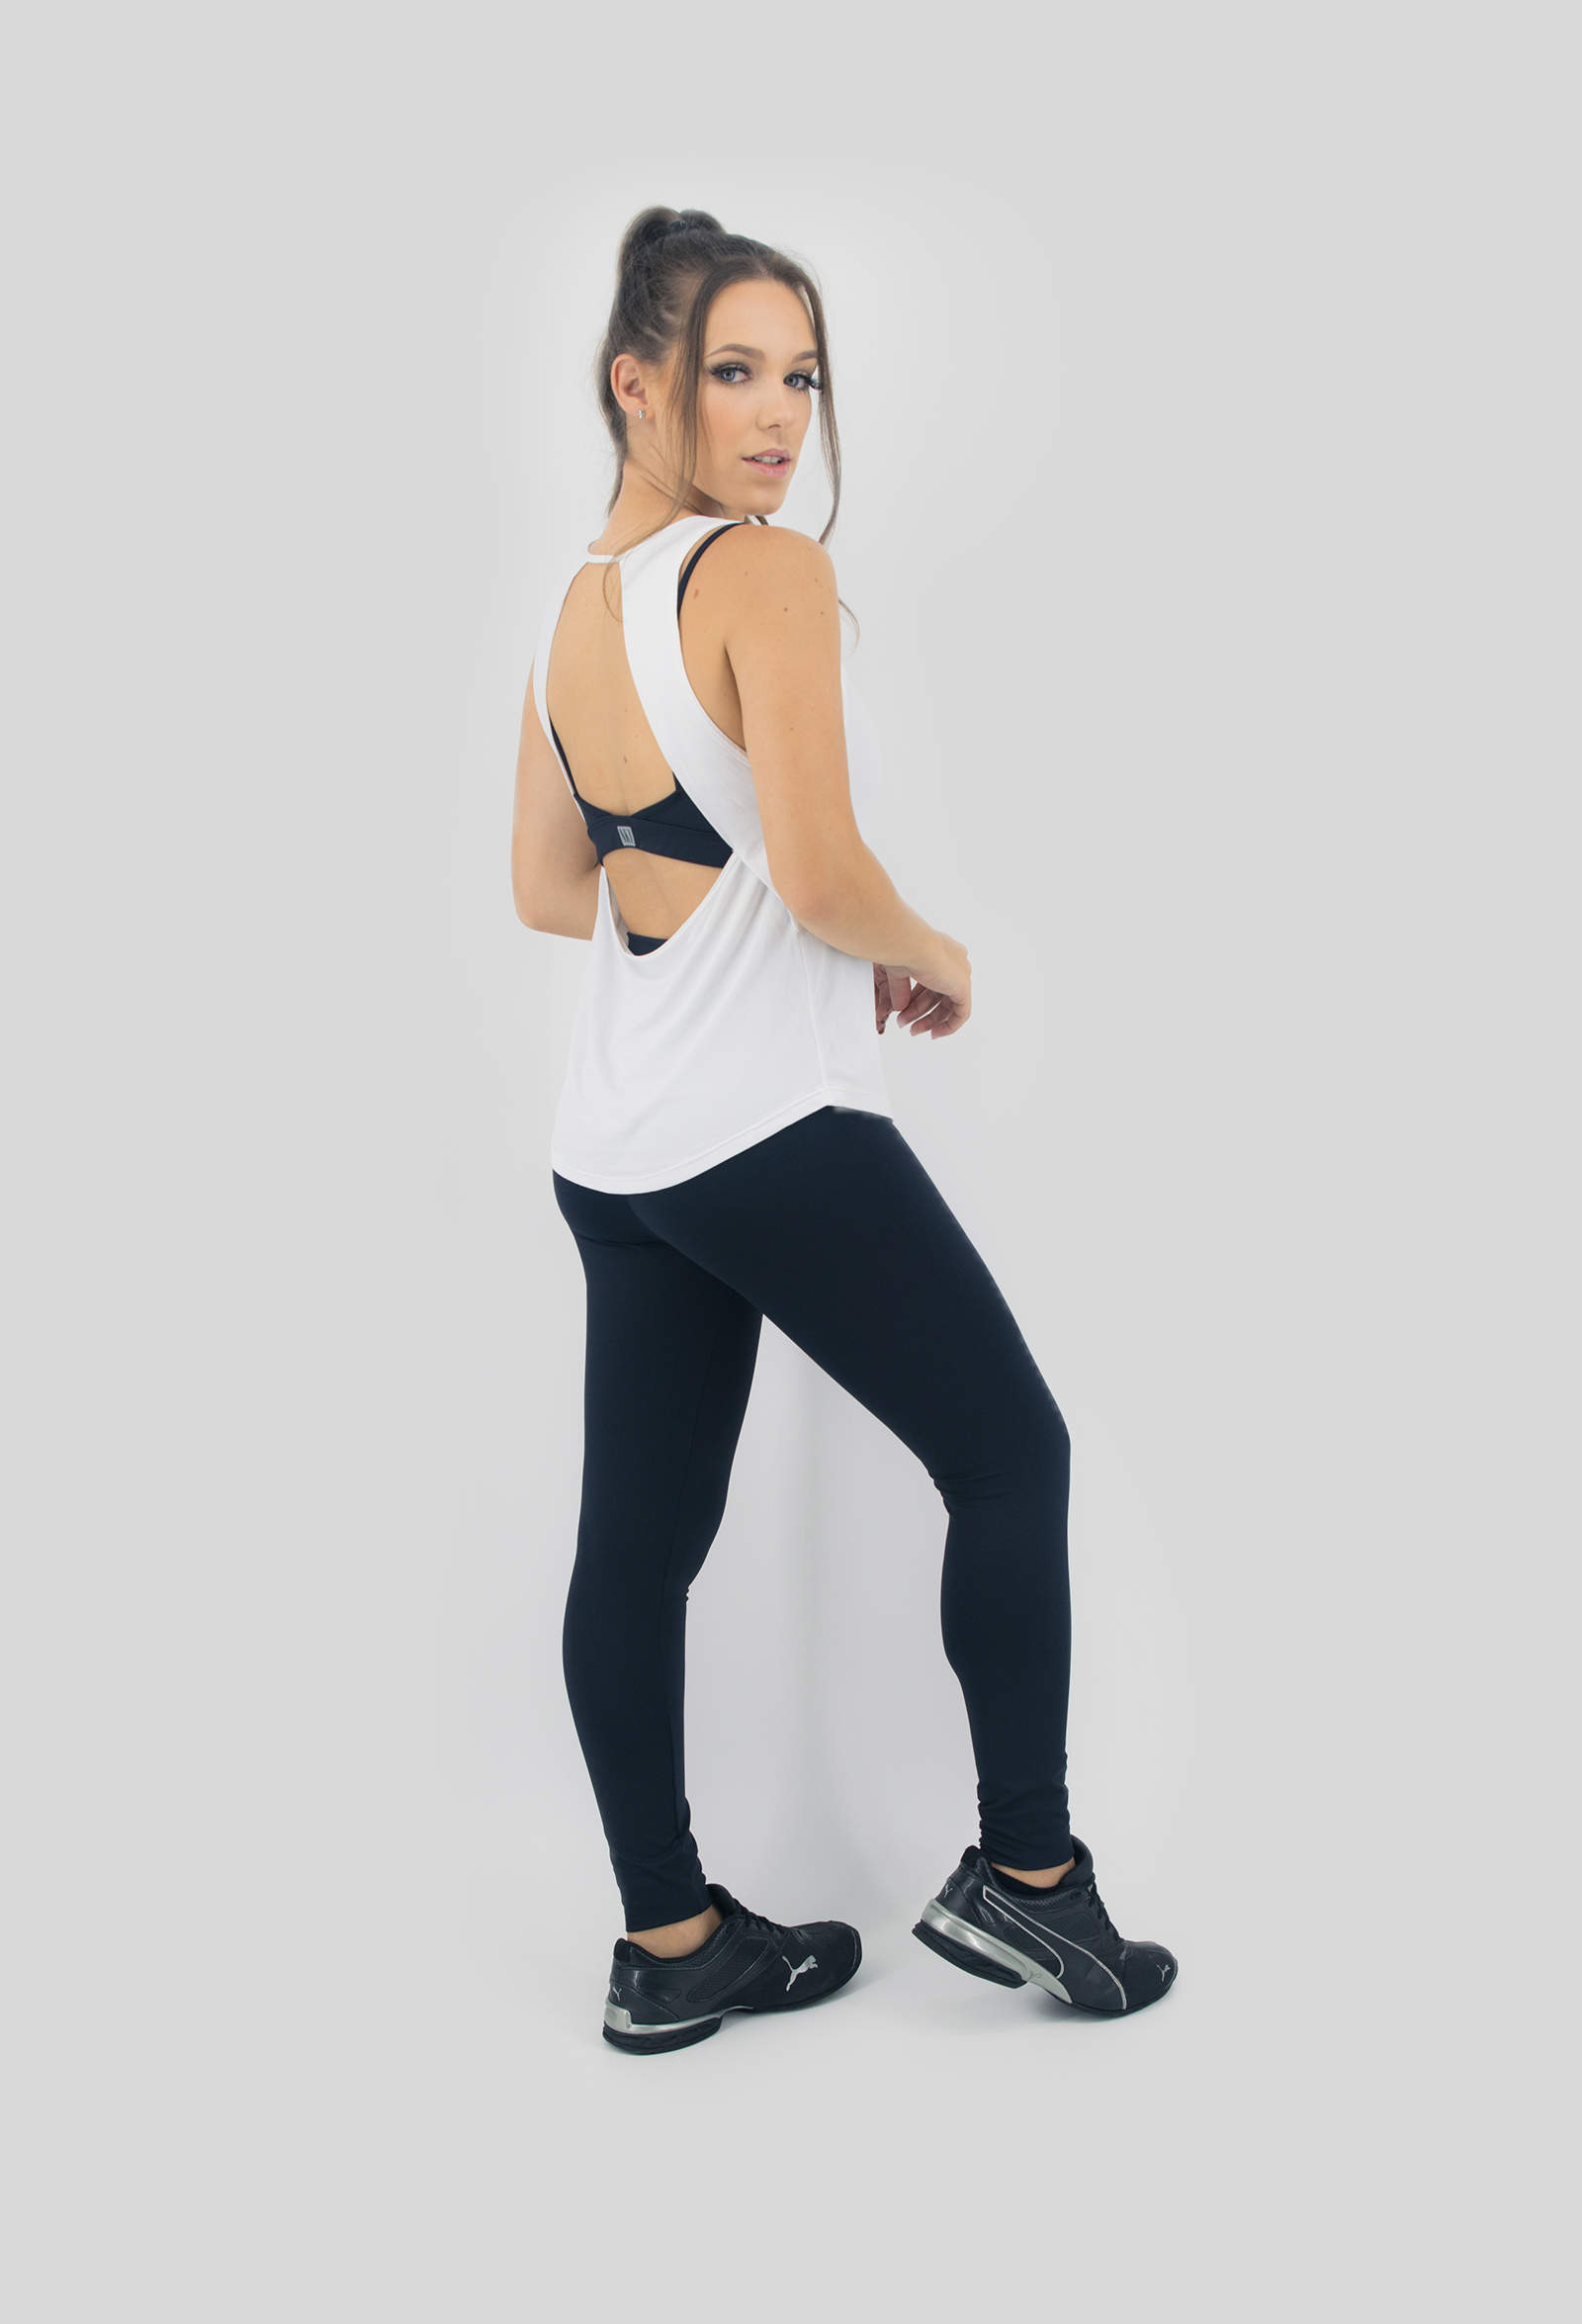 Regata Lux Branca, Coleção Move Your Body - NKT Fitwear Moda Fitness